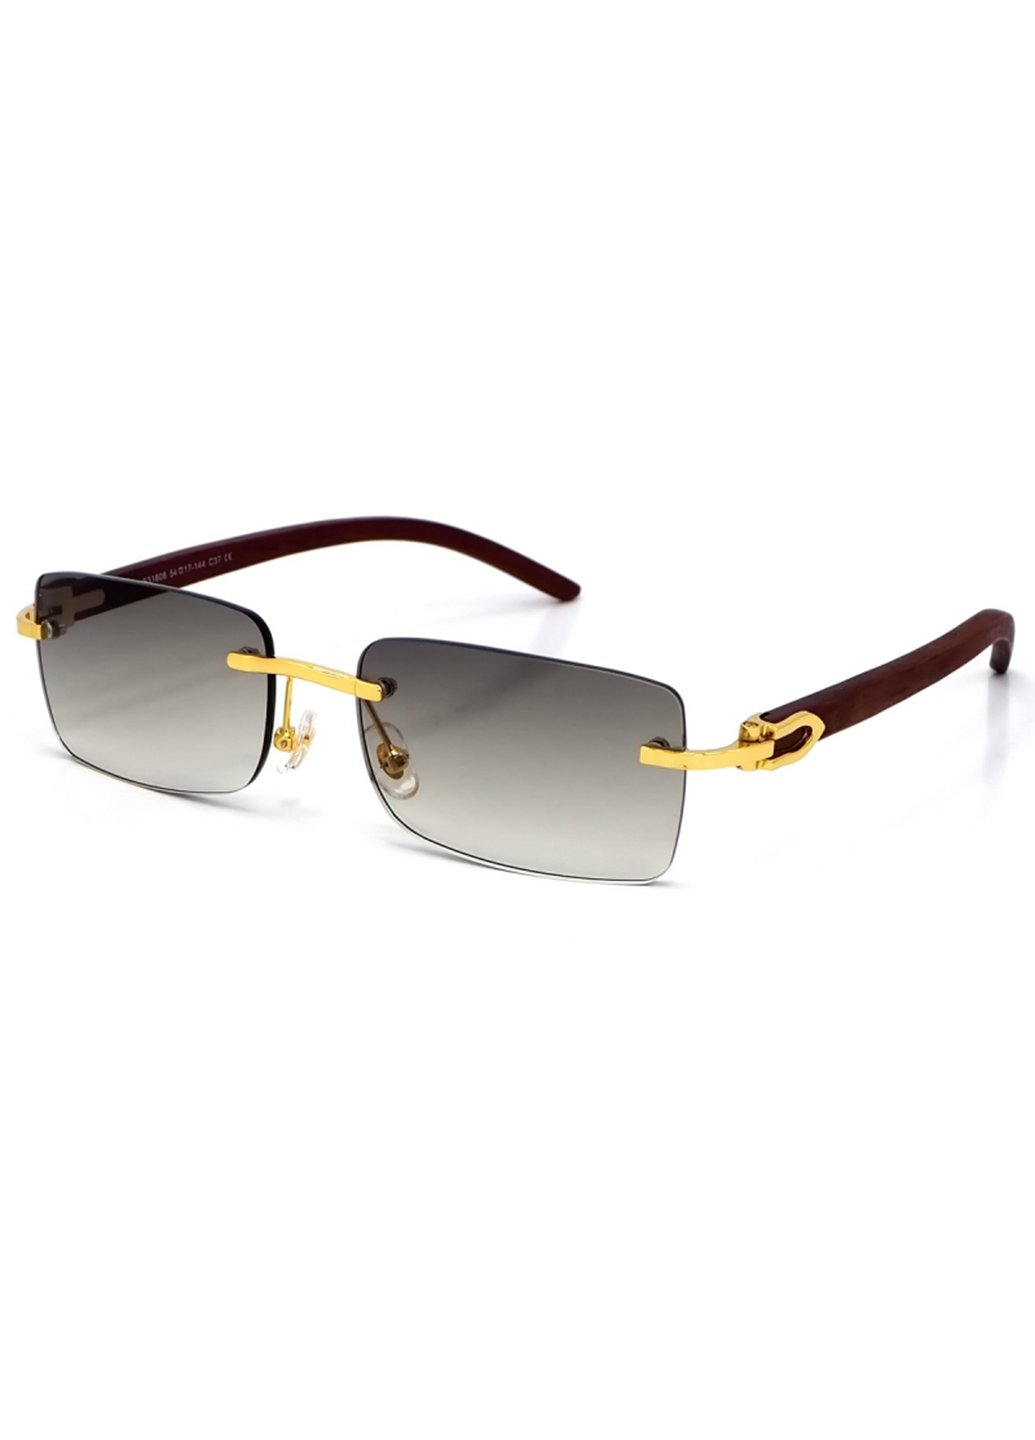 Купить Женские солнцезащитные очки Merlini с поляризацией S31808 117009 - Золотистый в интернет-магазине